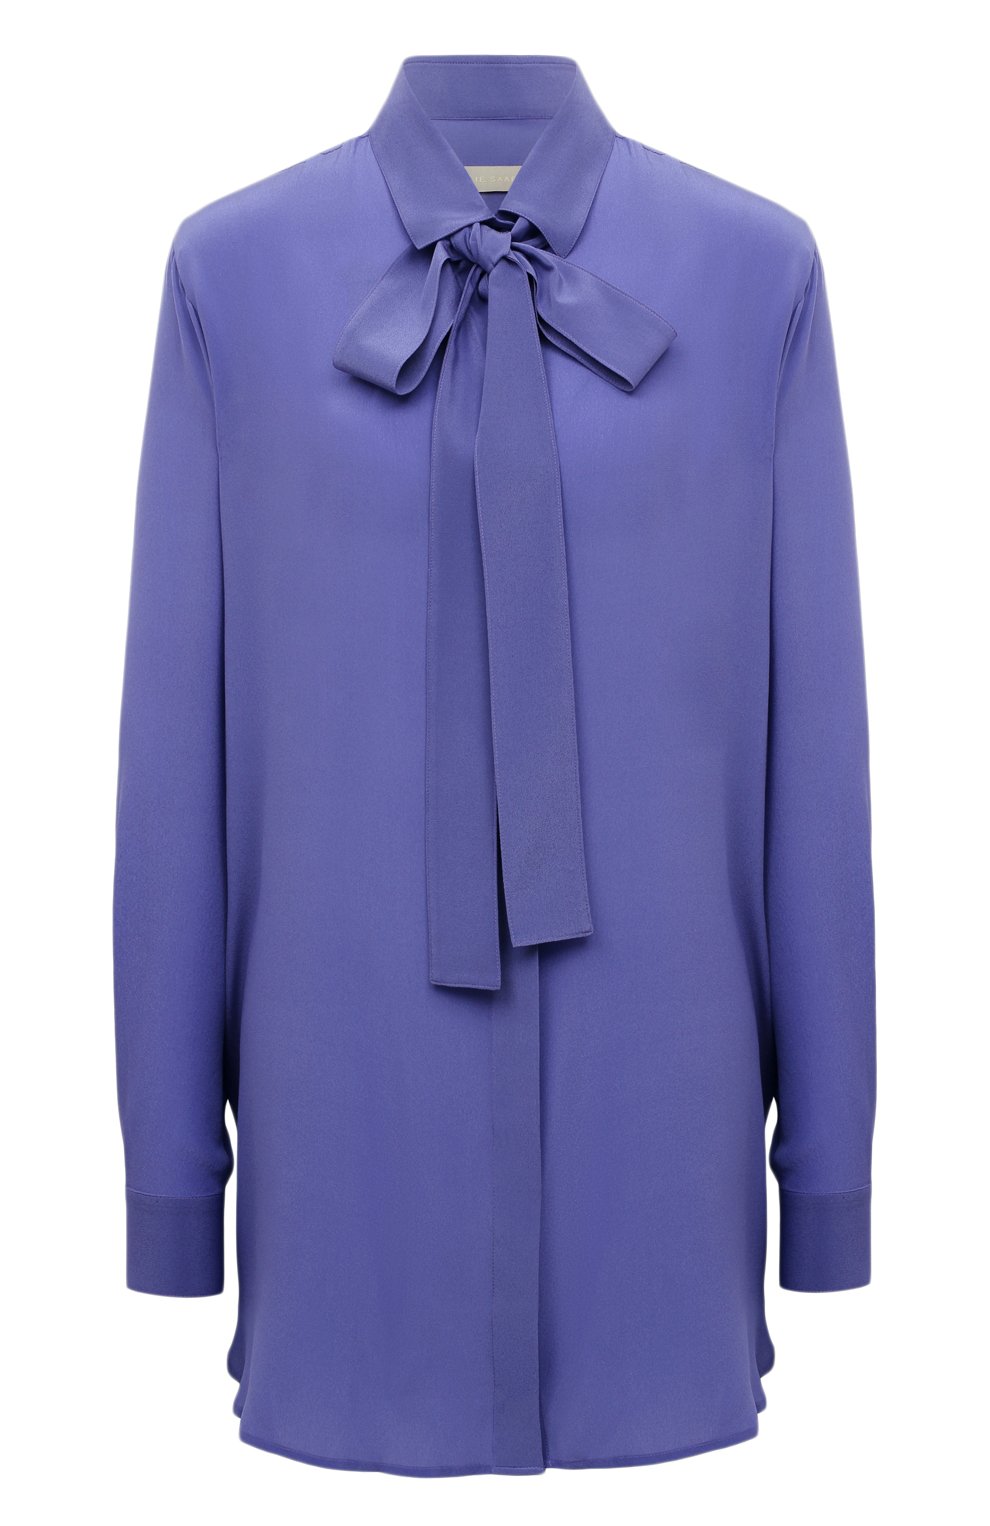 Блузы Elie Saab, Шелковая блузка Elie Saab, Ливан, Сиреневый, Шелк: 100%;, 13384153  - купить